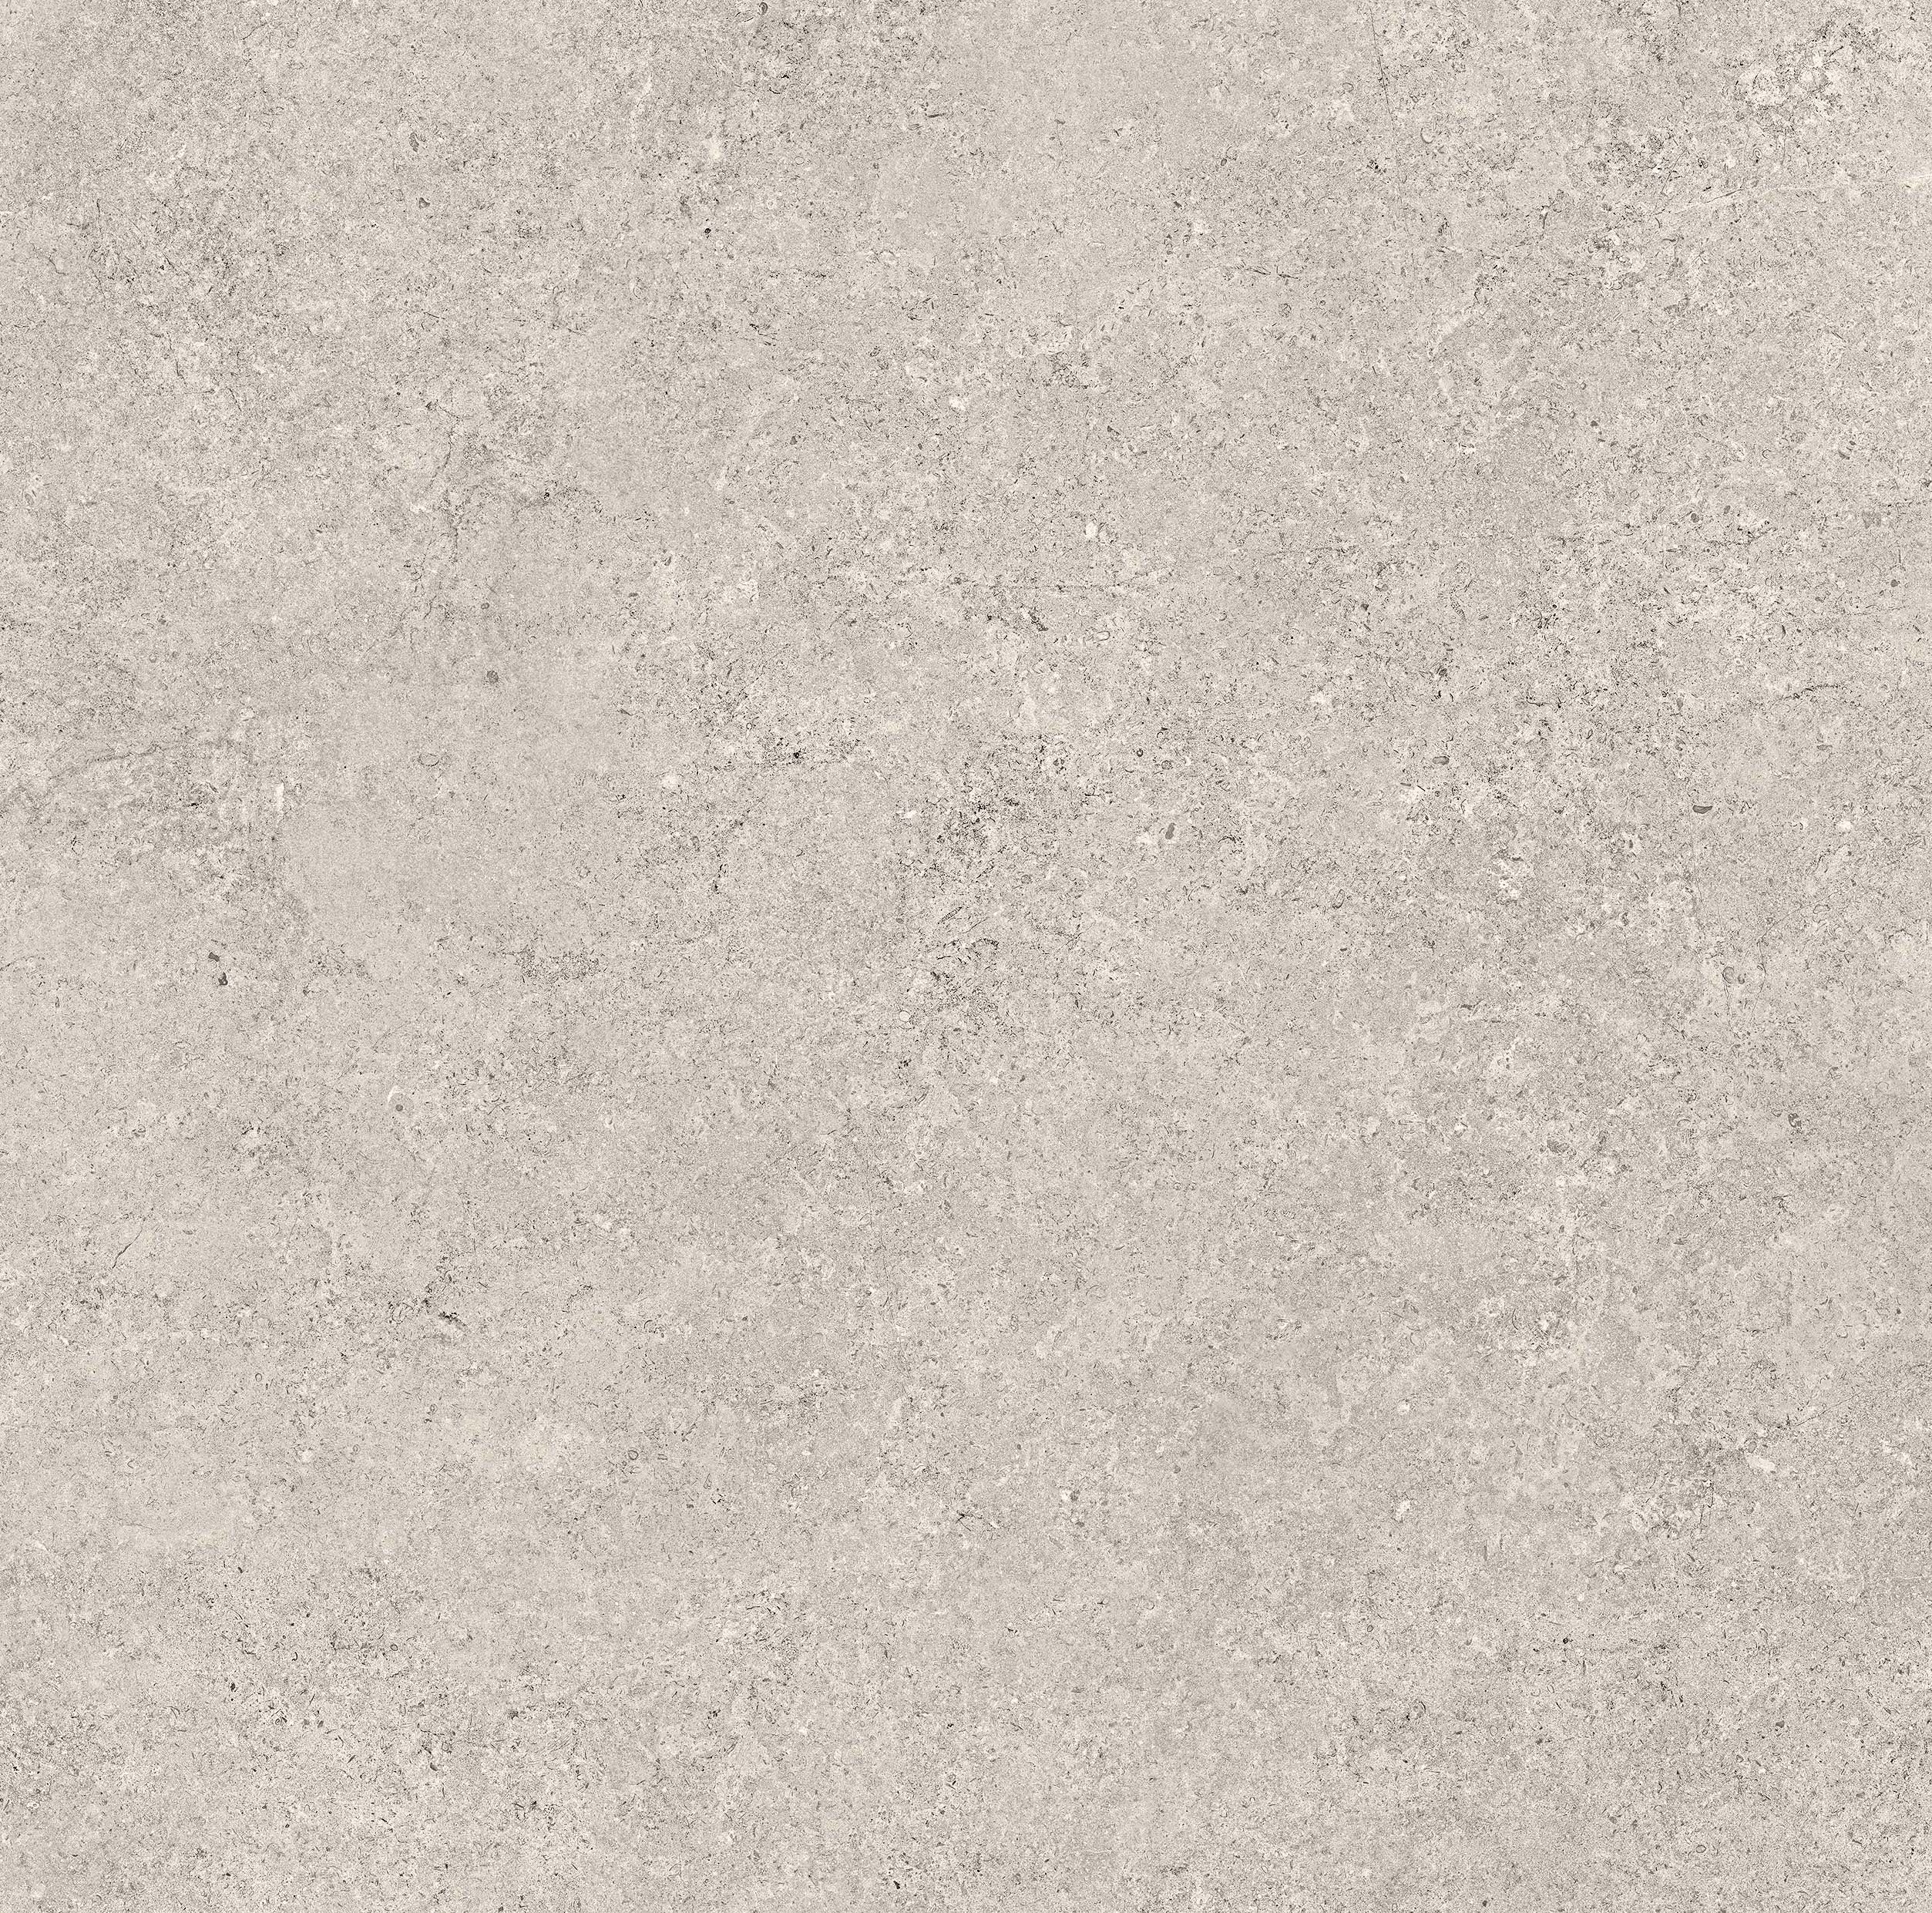 Quara - Cemento - Light grey - 60x60